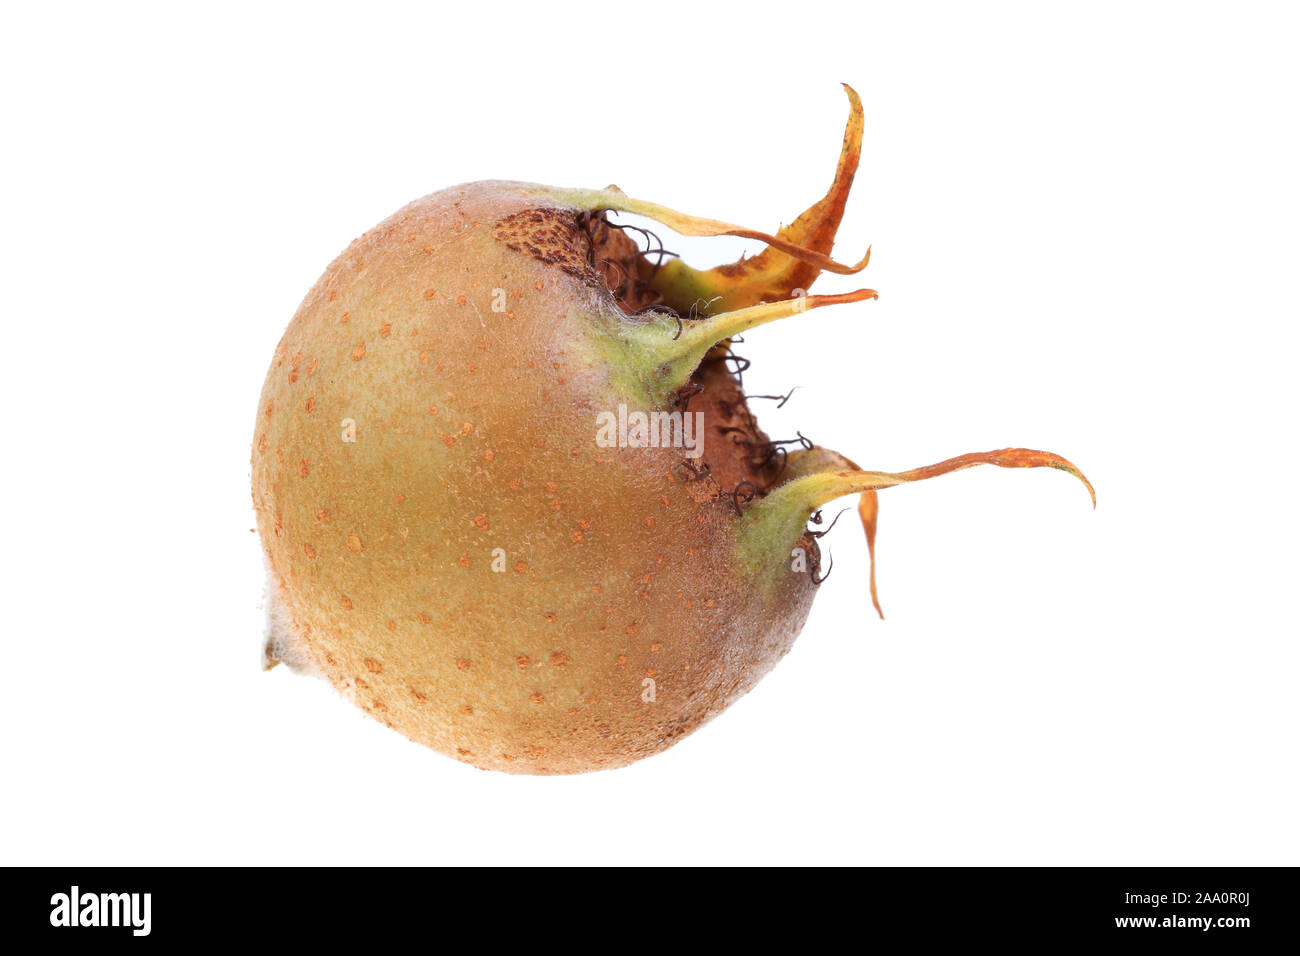 Echte Mispel oder Deutsche Mispel (Mespilus germanica), Frucht Stock Photo